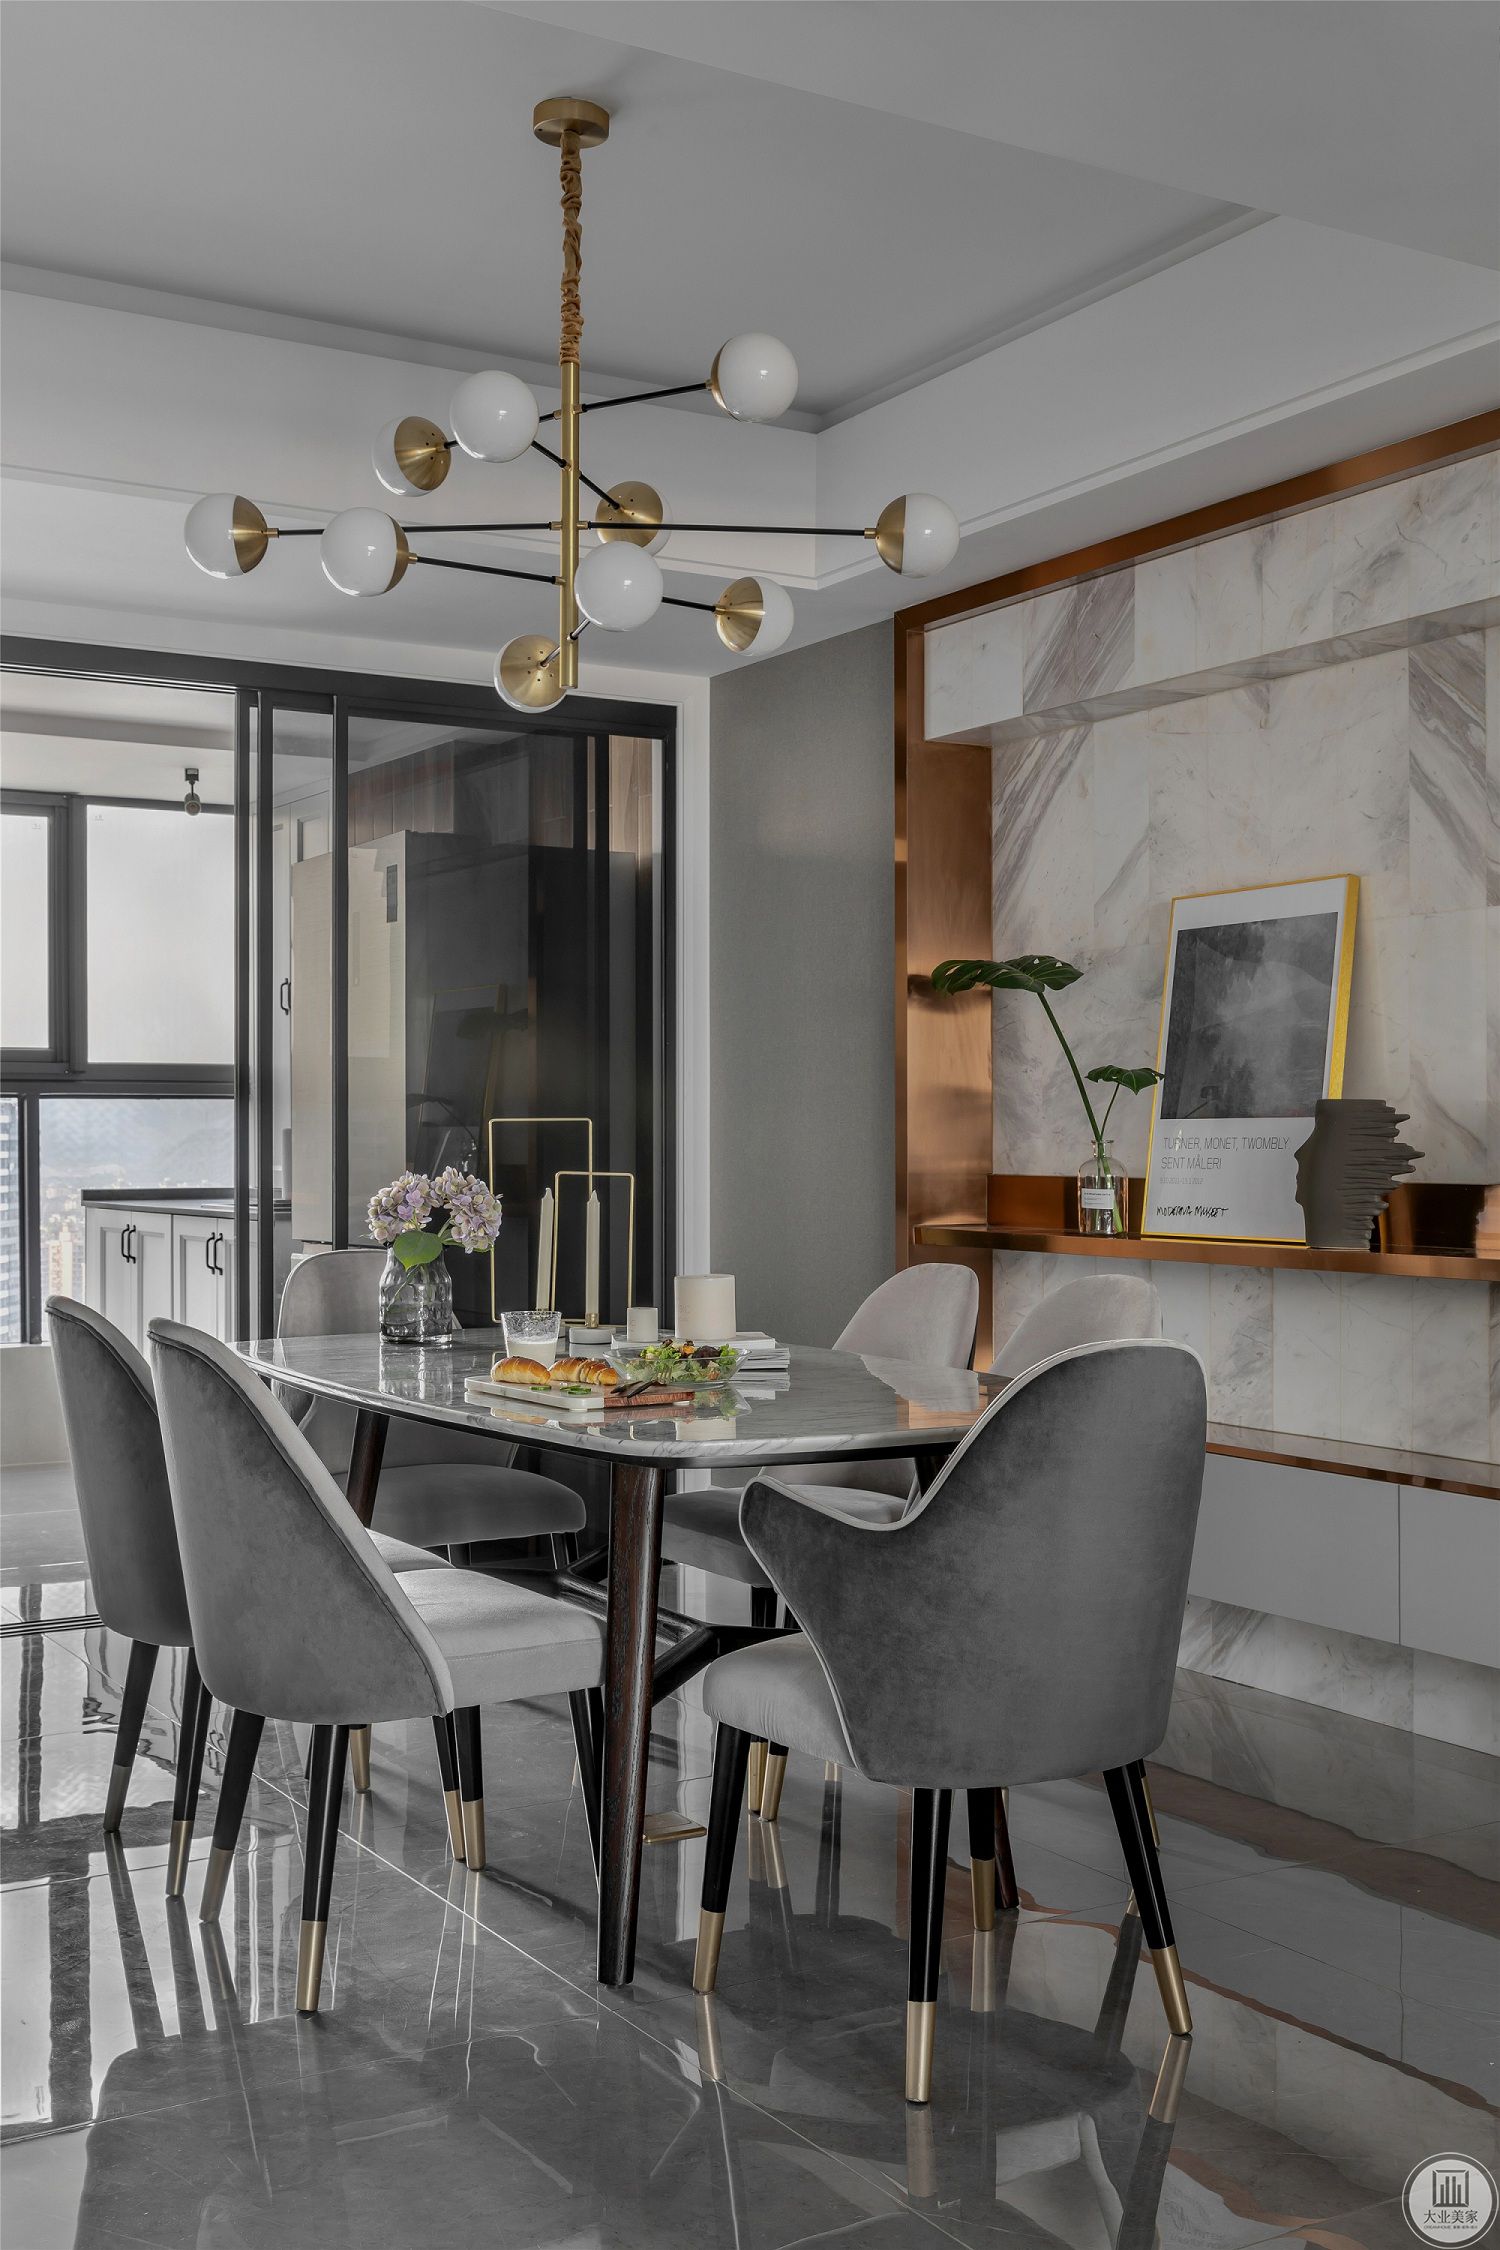  餐厅，大理石餐桌搭配灰色餐椅，再点缀以金属质感，流露出对精致品位生活的追求。